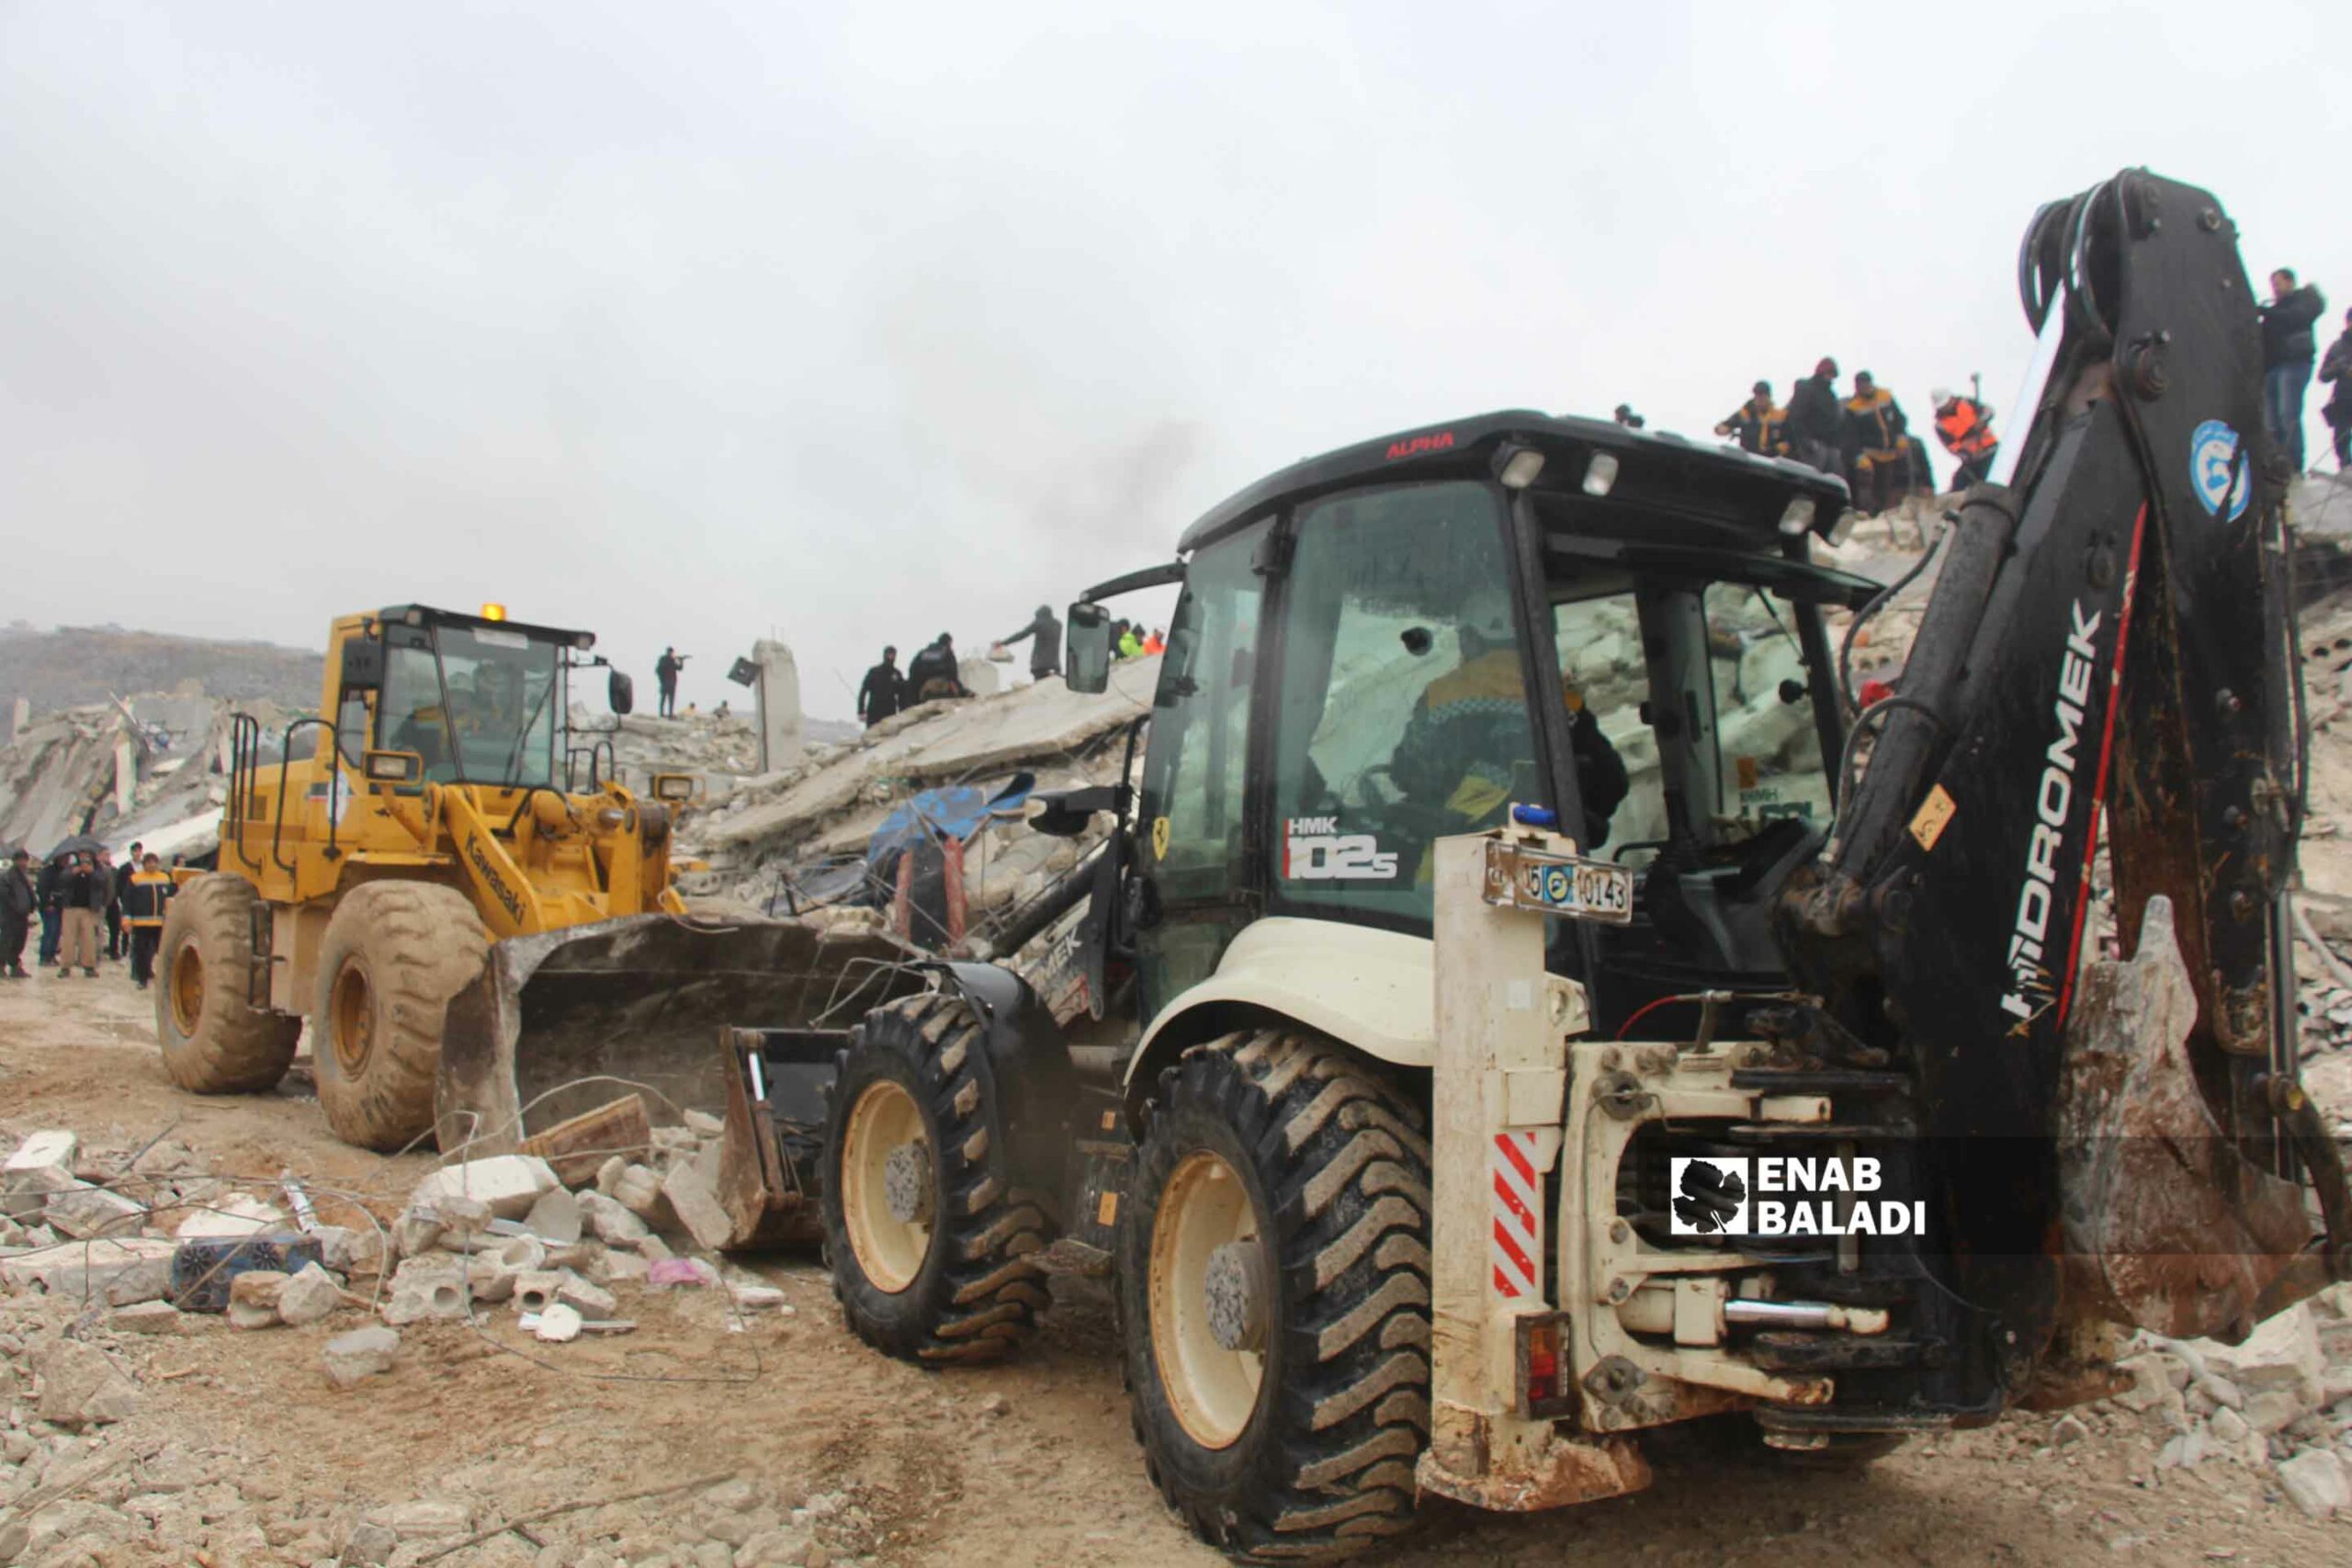 متطوعون في "الدفاع المدني السوري" يحاولون انقاذ وانتشال الضحايا من تحت الركام في منطقة سرمدا إثر زلزال ضرب مناطق شمال غربي سوريا- 6 شباط 2023 (عنب بلدي/ إياد عبد الجواد)